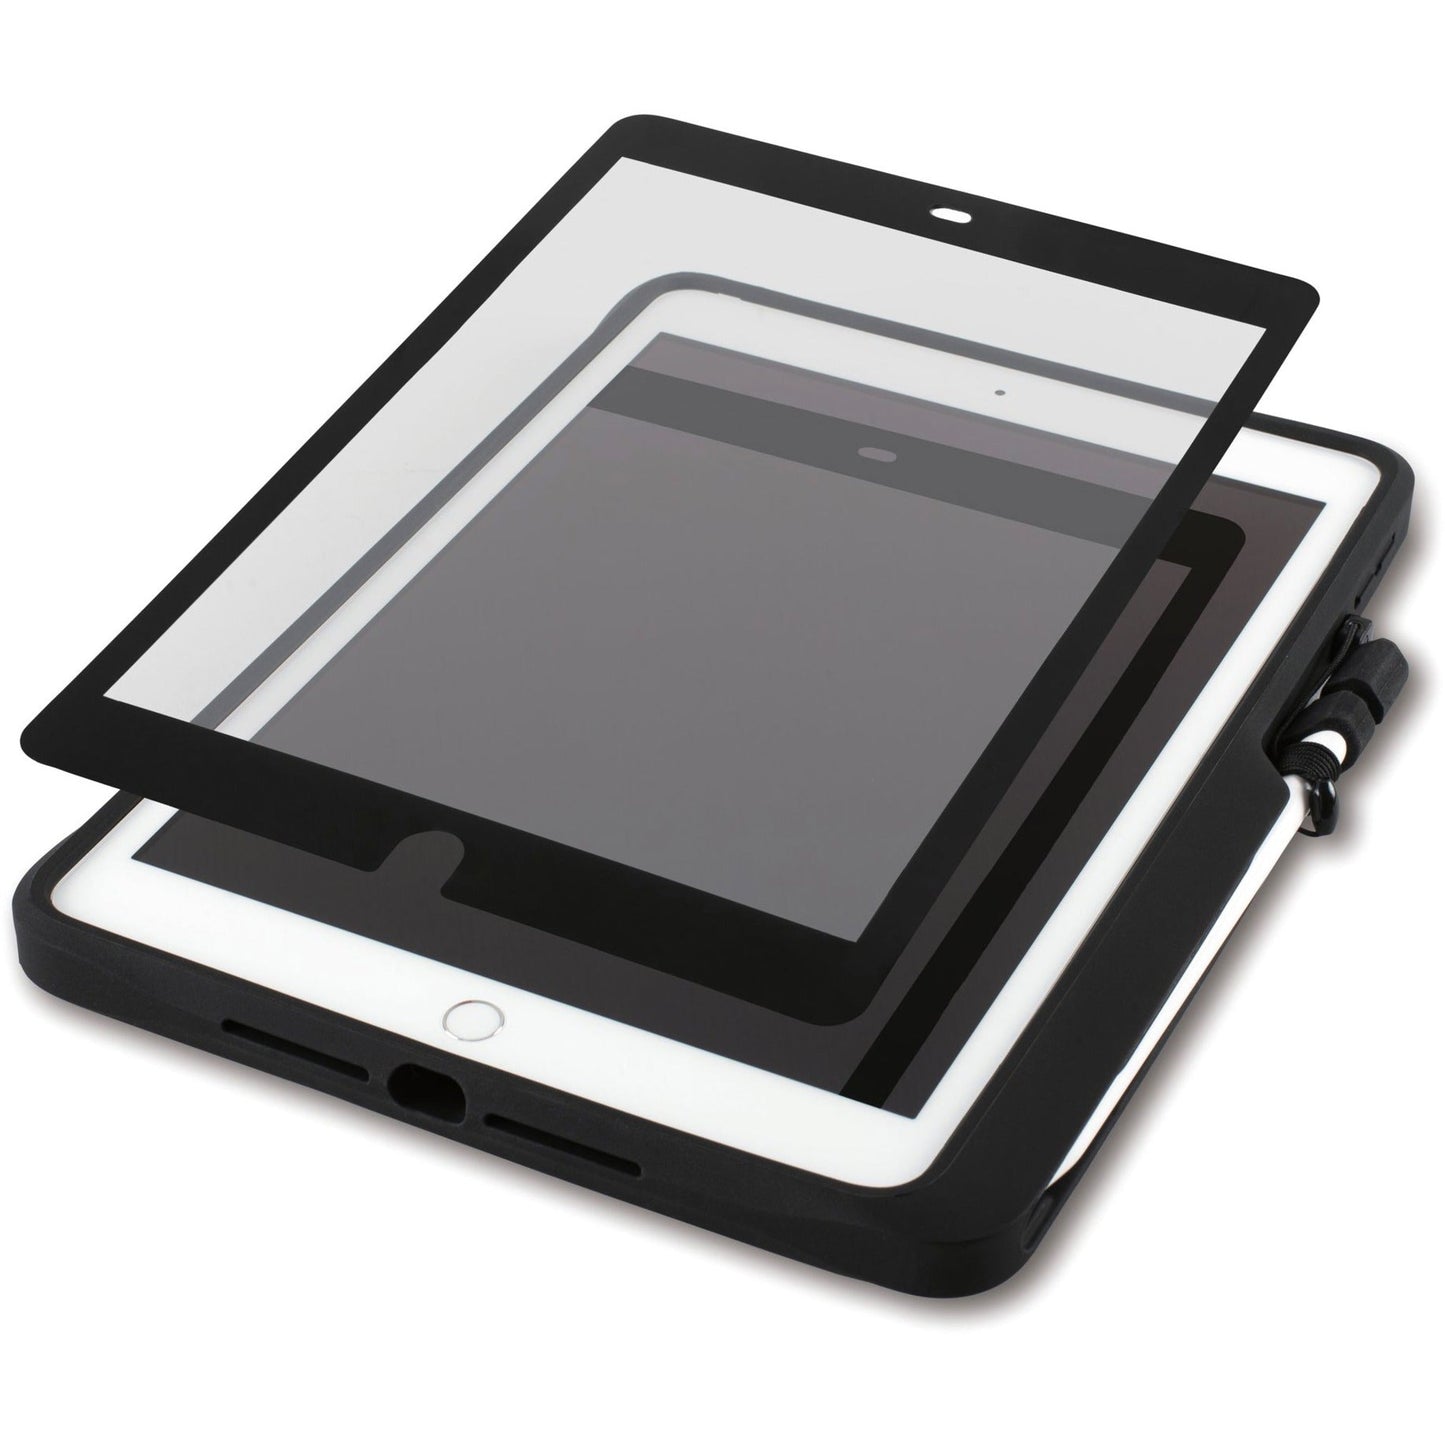 Kensington BlackBelt Rugged Carrying Case for 10.2" Apple iPad (7th Generation) iPad (9th Generation) iPad (8th Generation) Tablet - Black